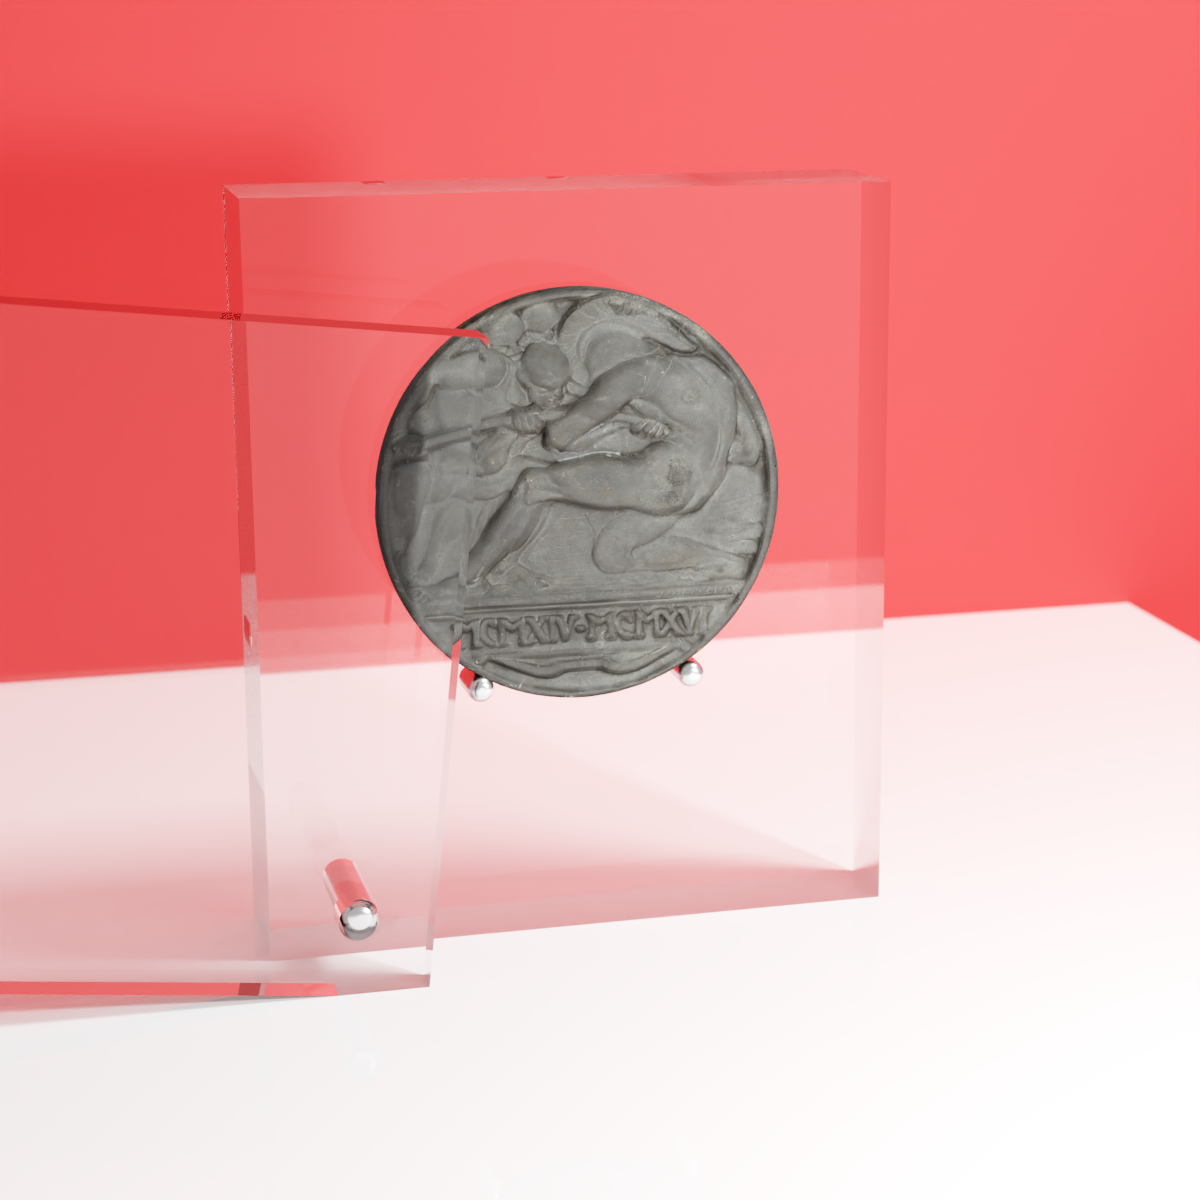 Présentoirs en plexiglas pour monnaies et médailles de collection